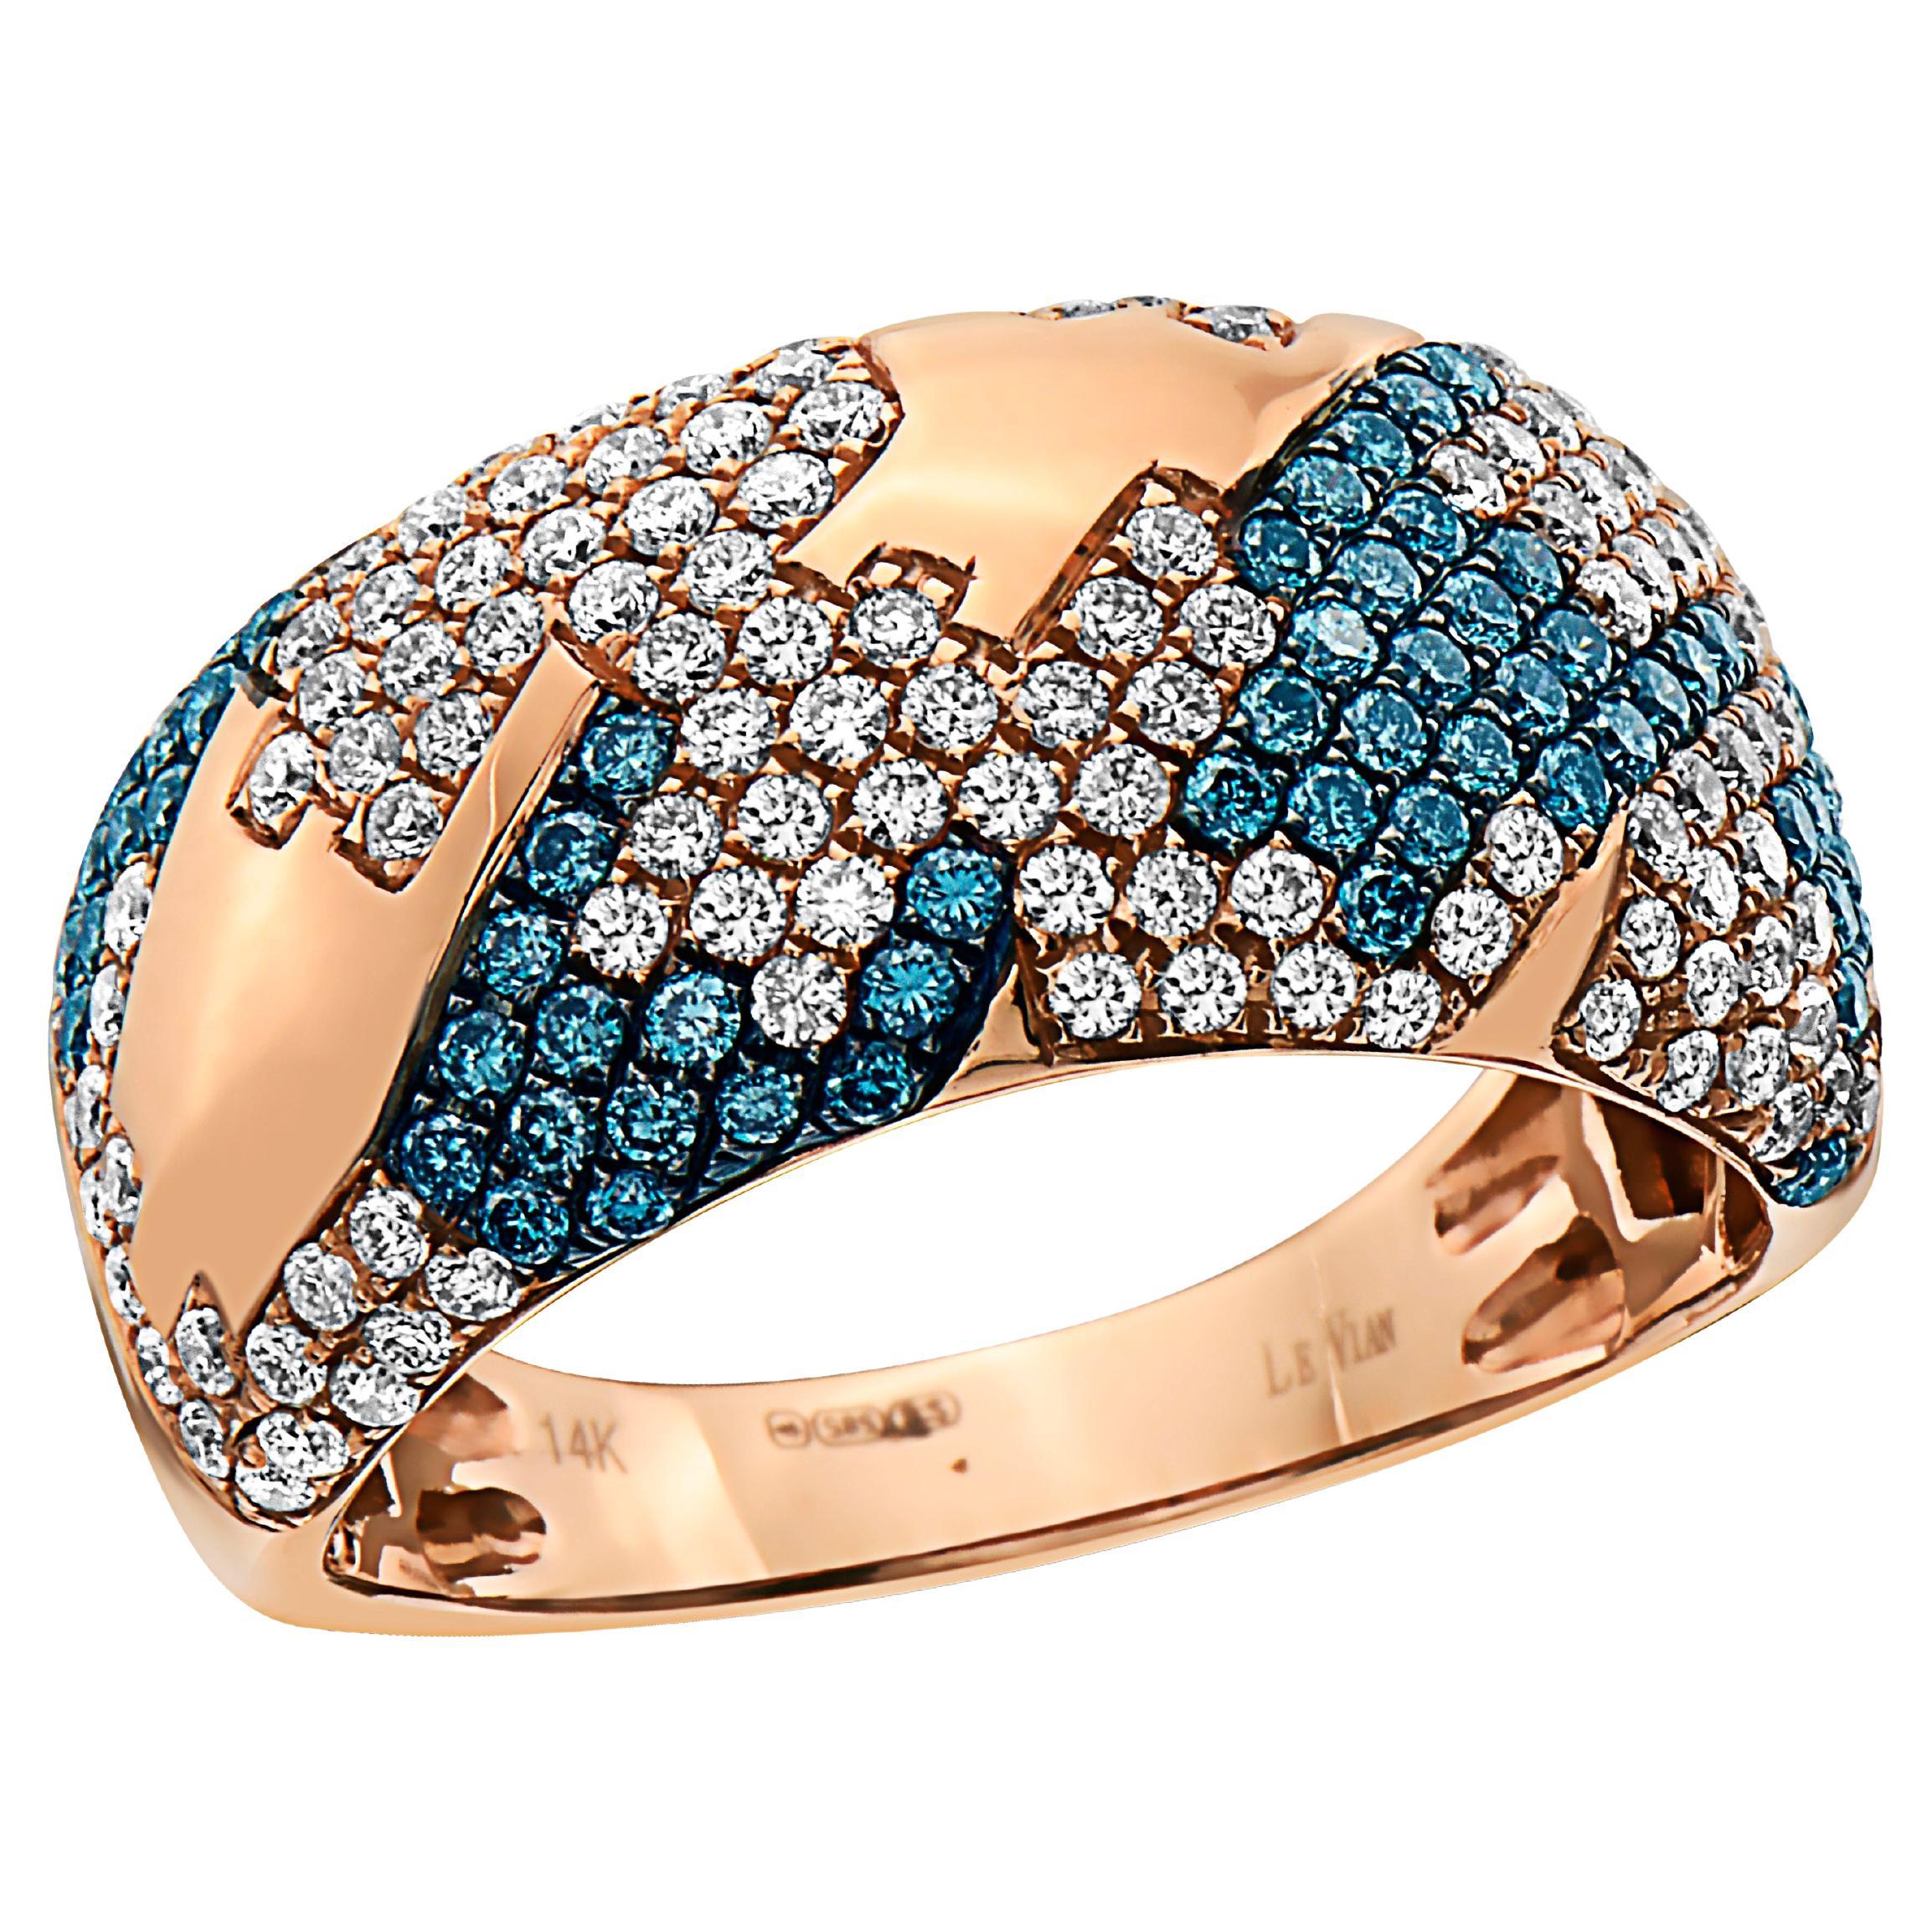 Levianischer Levian Ring 1 Karat schöne blaue und weiße natürliche Diamanten in 14K Roségold gefasst